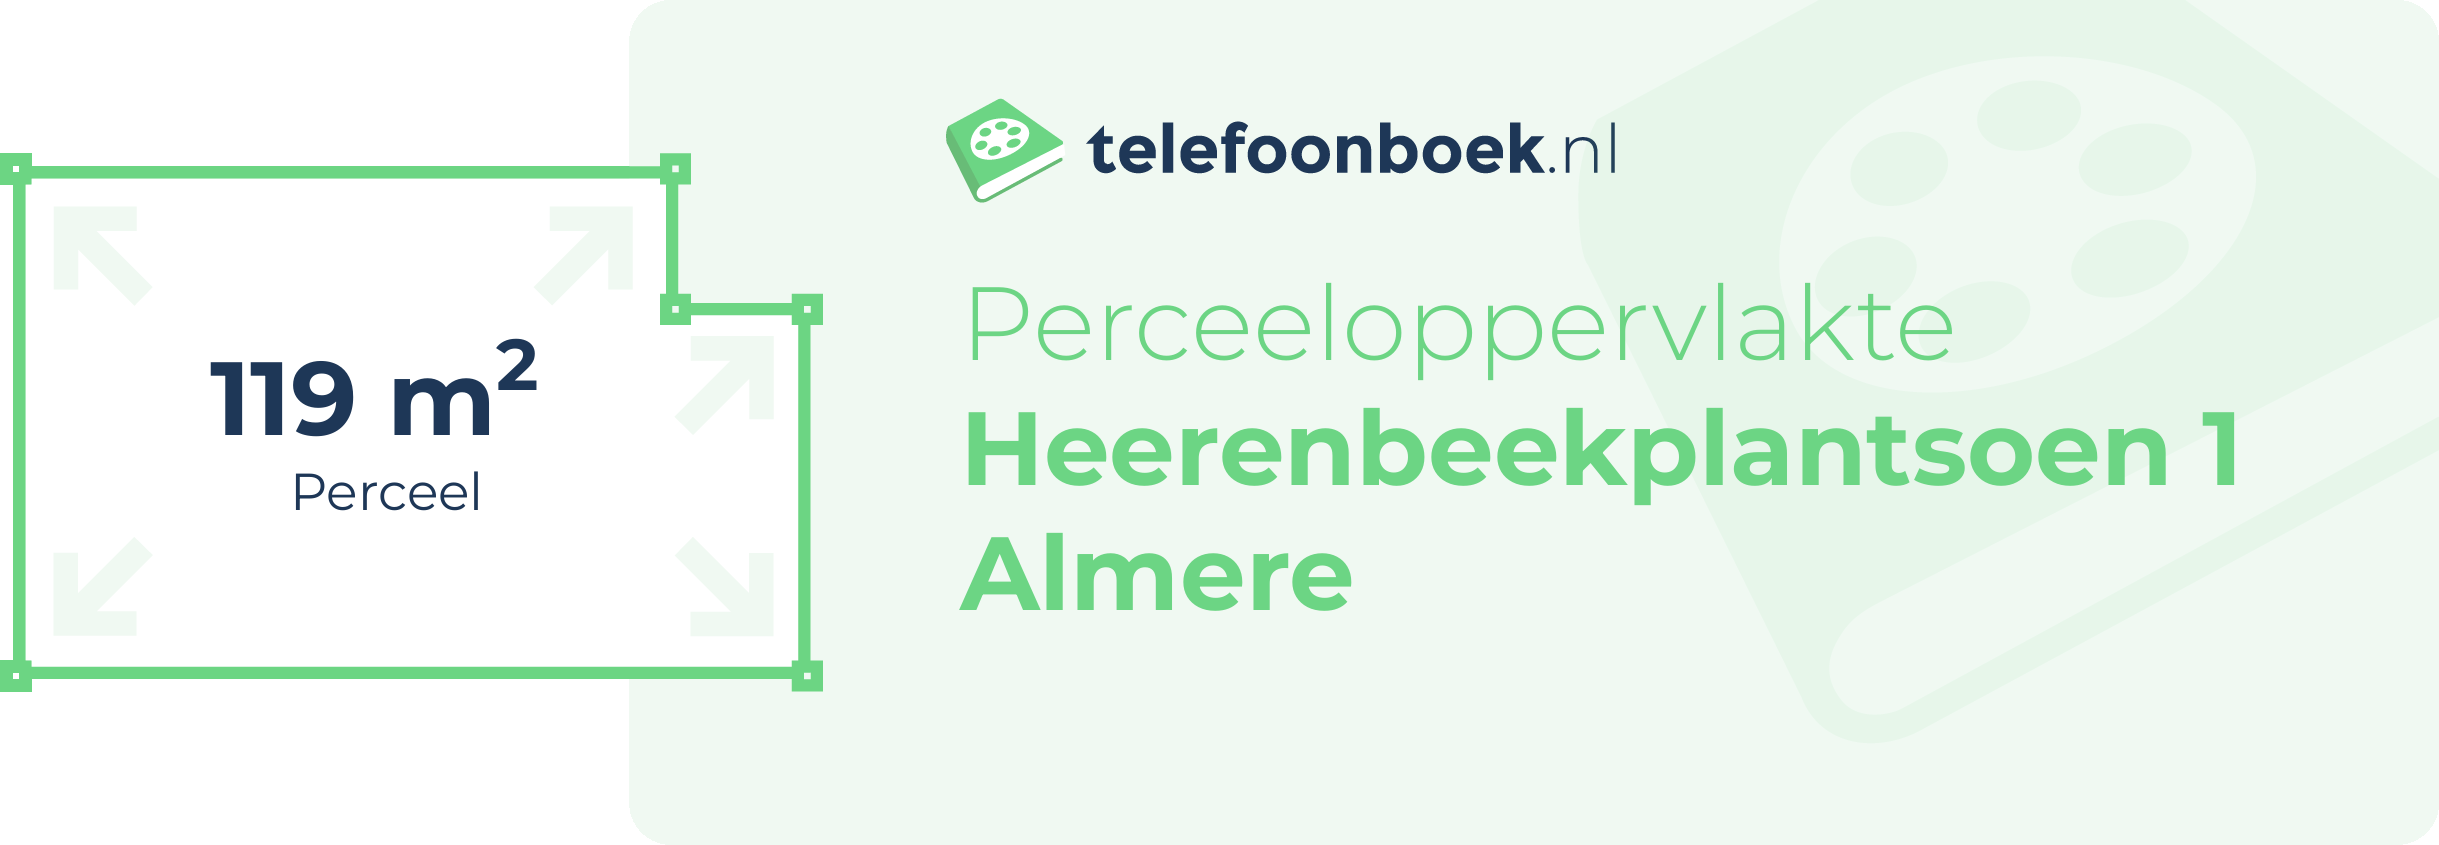 Perceeloppervlakte Heerenbeekplantsoen 1 Almere